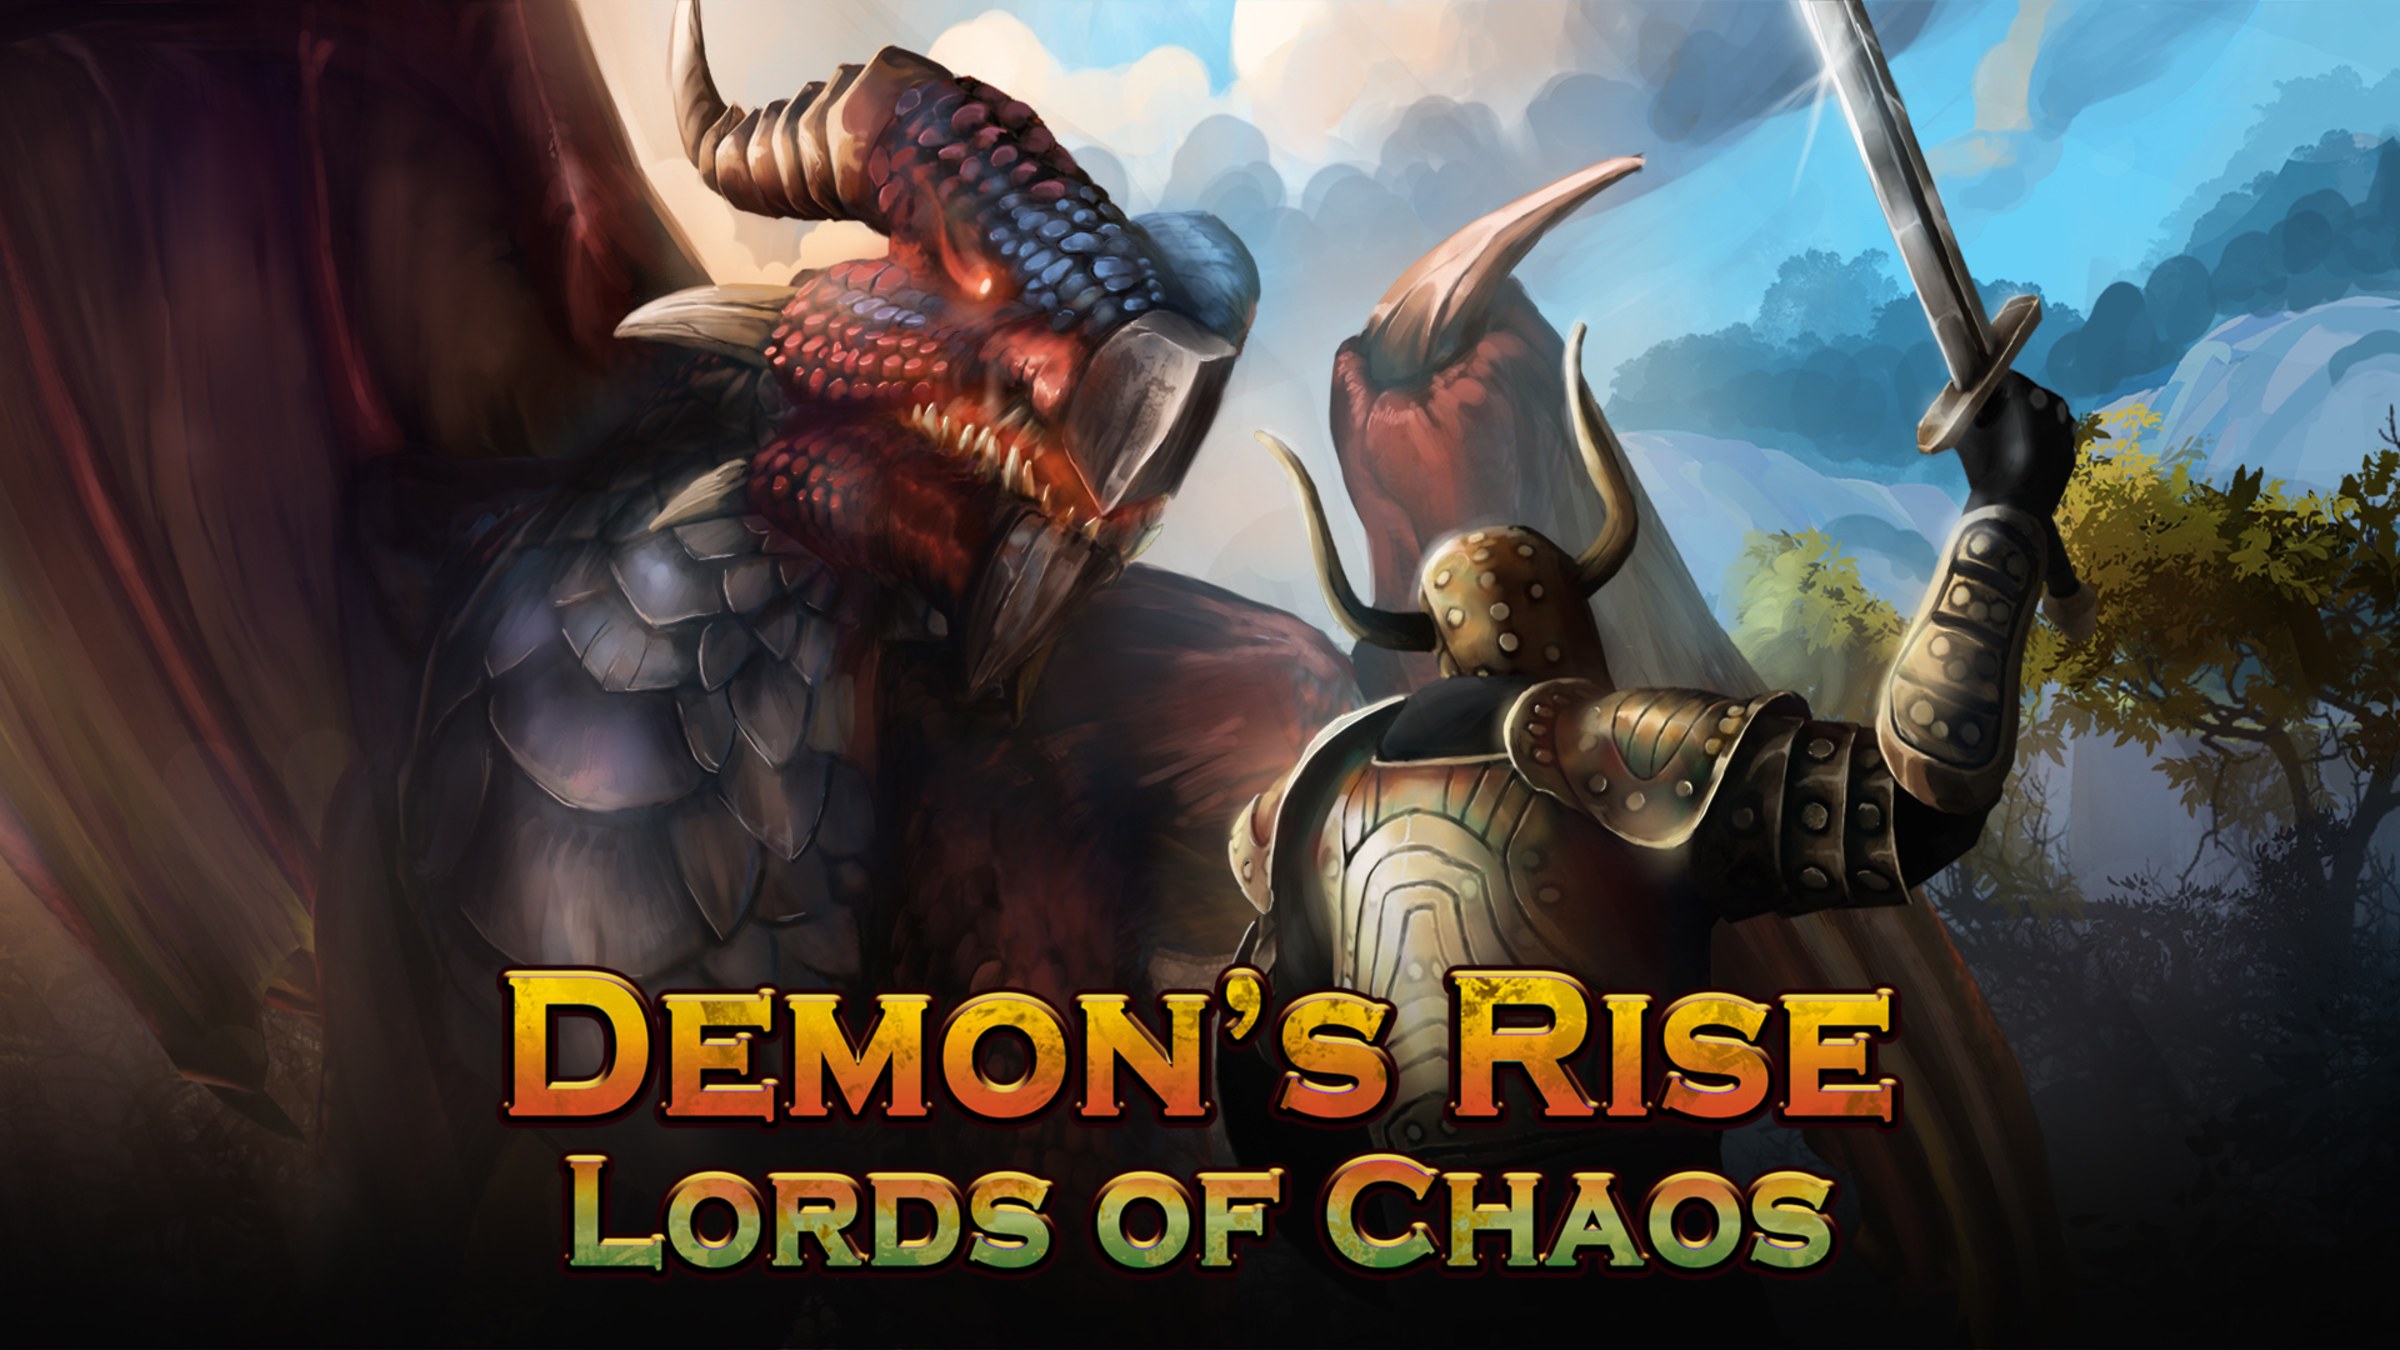 FÓRUM NOX - The World 3 Rise of Demon: Ação e RPG em um Jogo